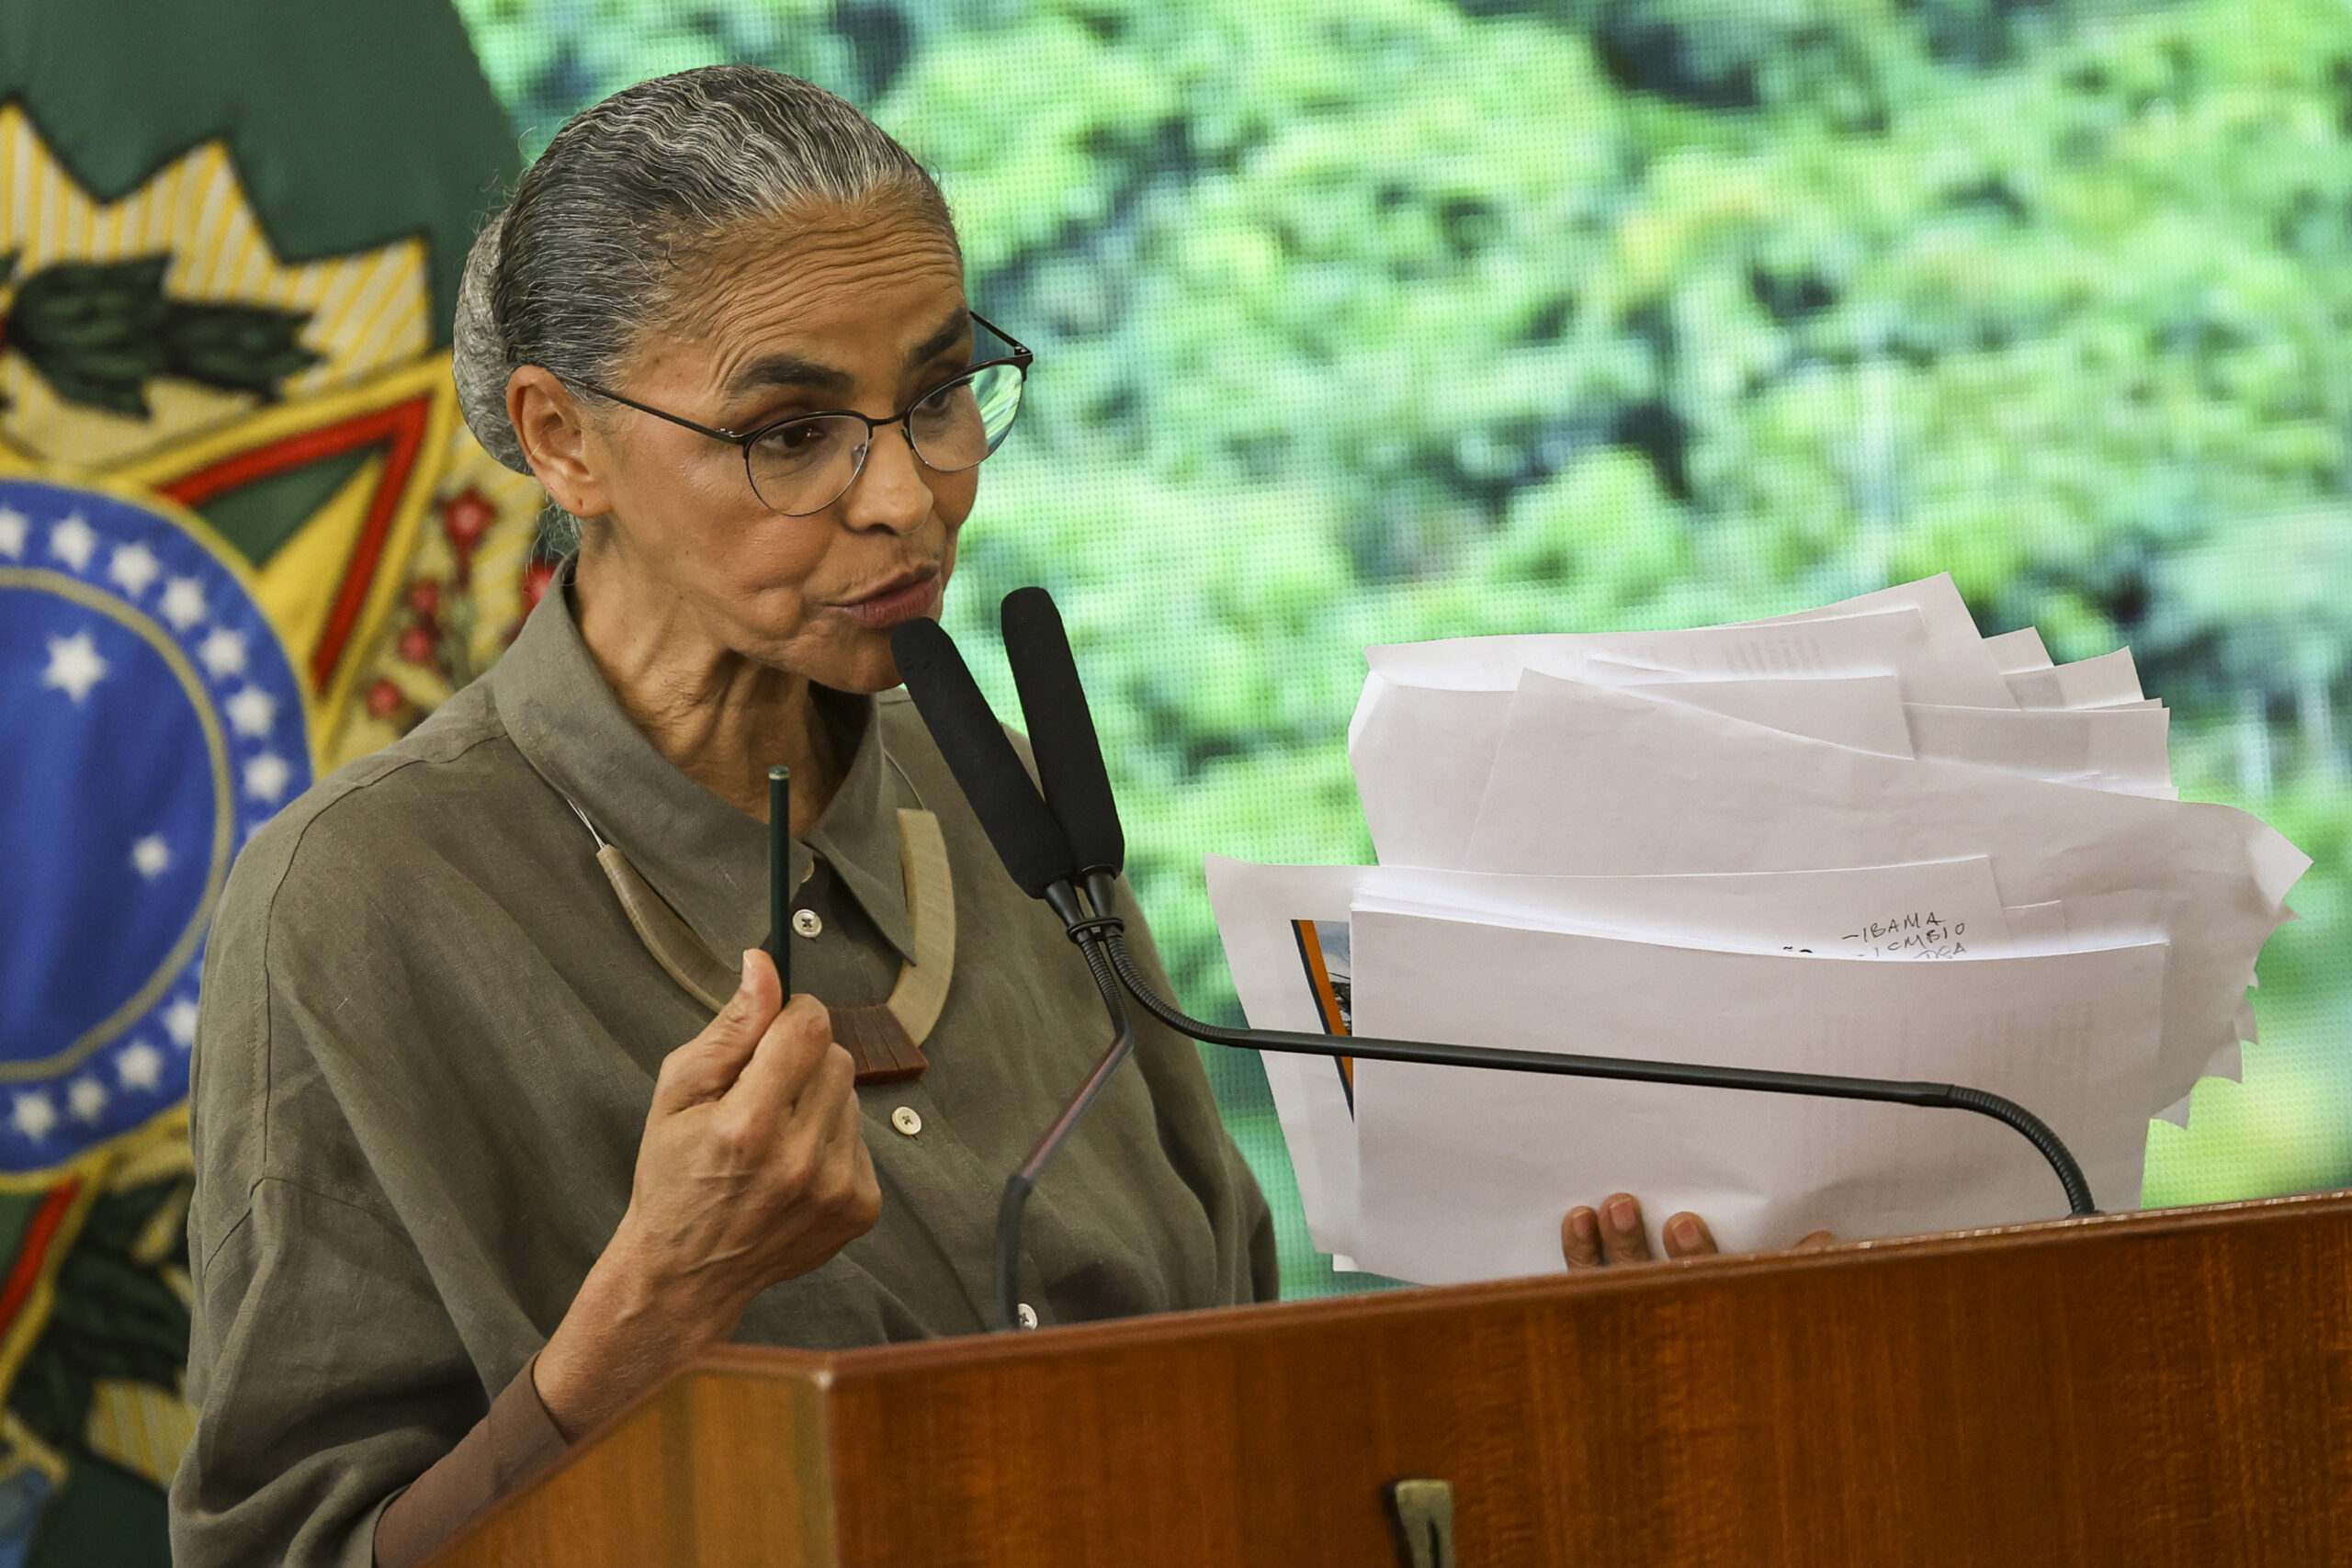 Imagem da ministra Marina Silva durante pronunciamento falando ao microfone.